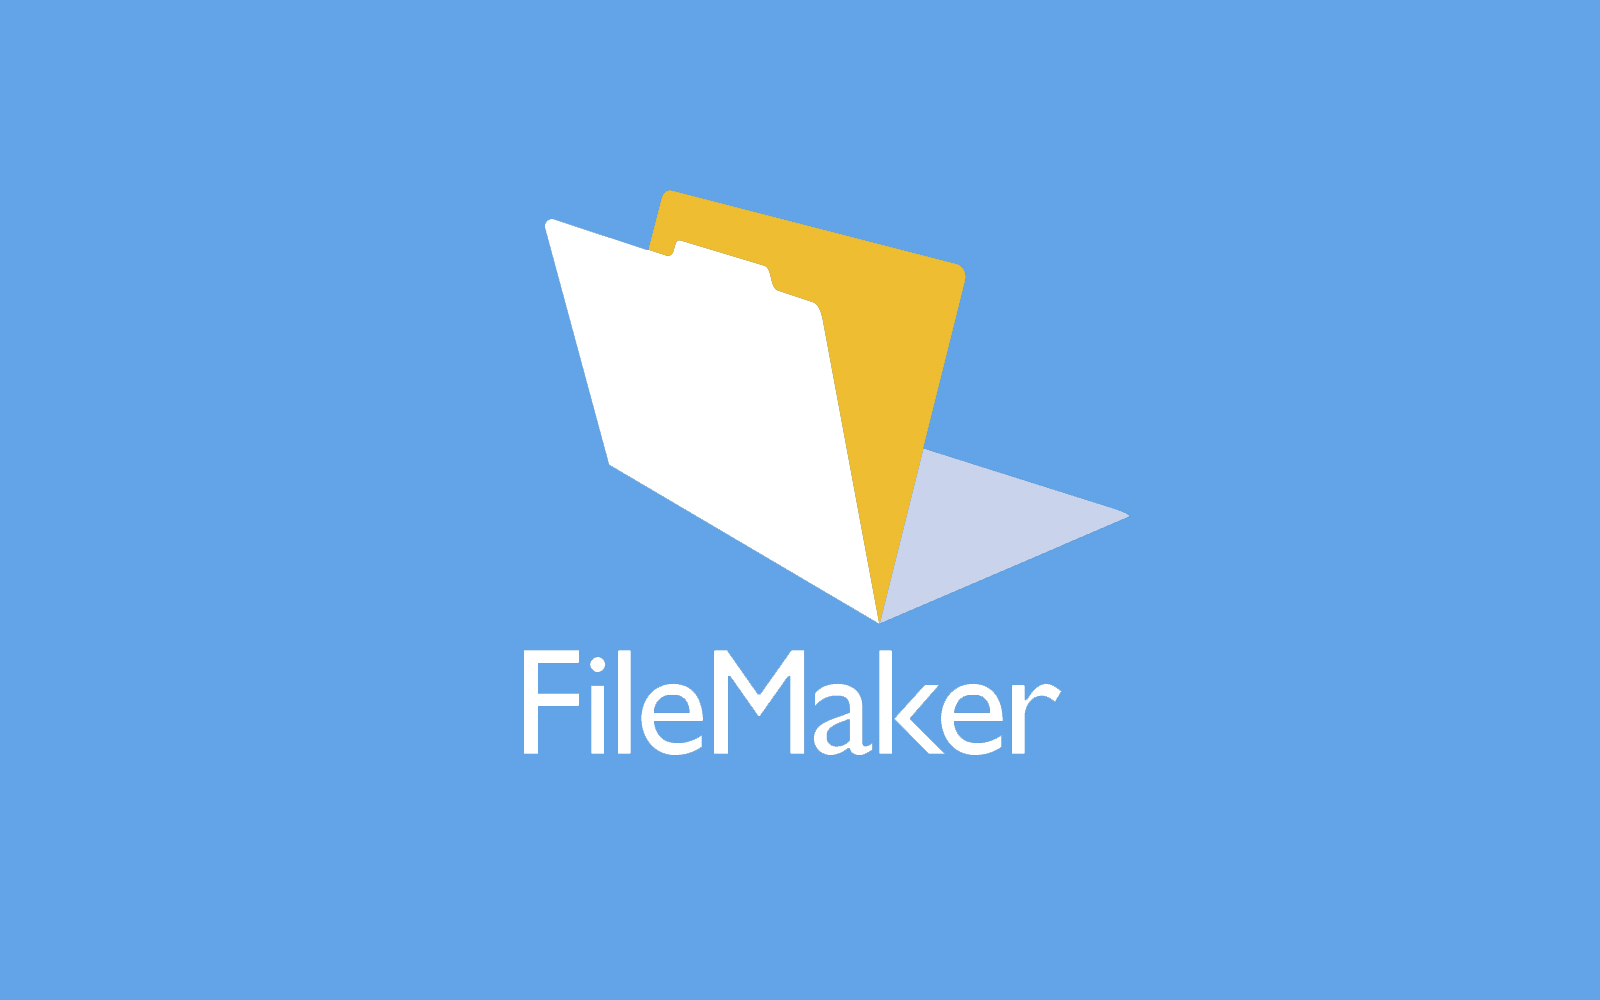 FileMakerシステム開発